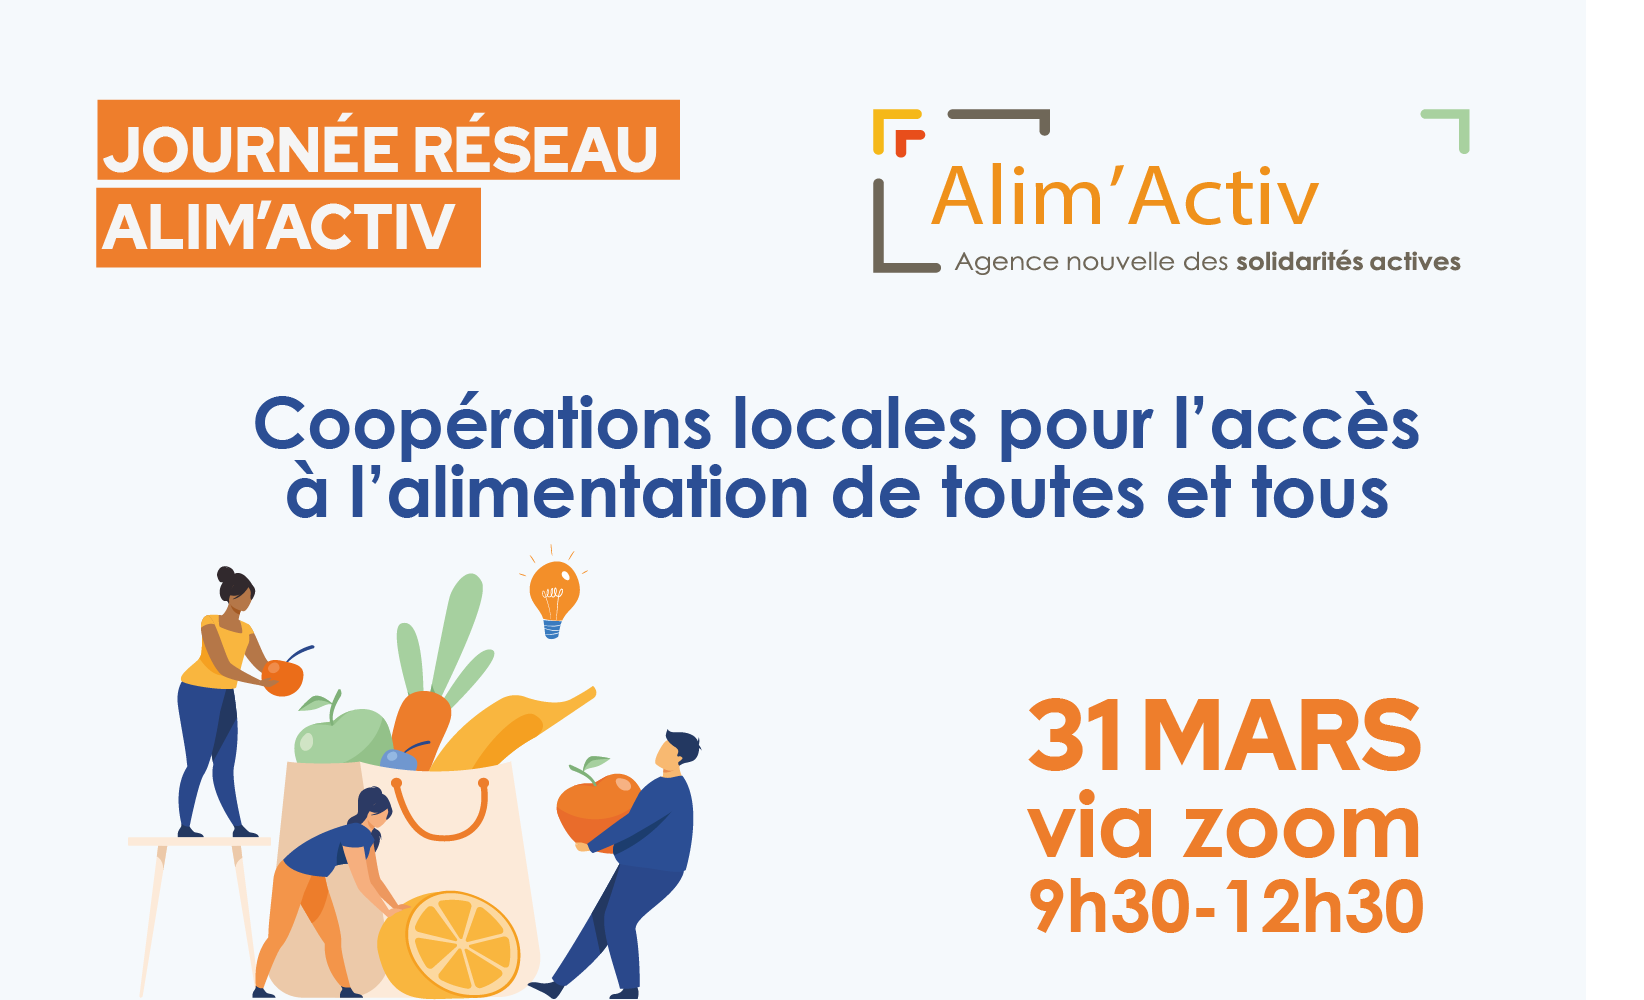 Journée réseau Alim'activ 2022, rendez-vous le 31 mars de 9h30 à 12h30